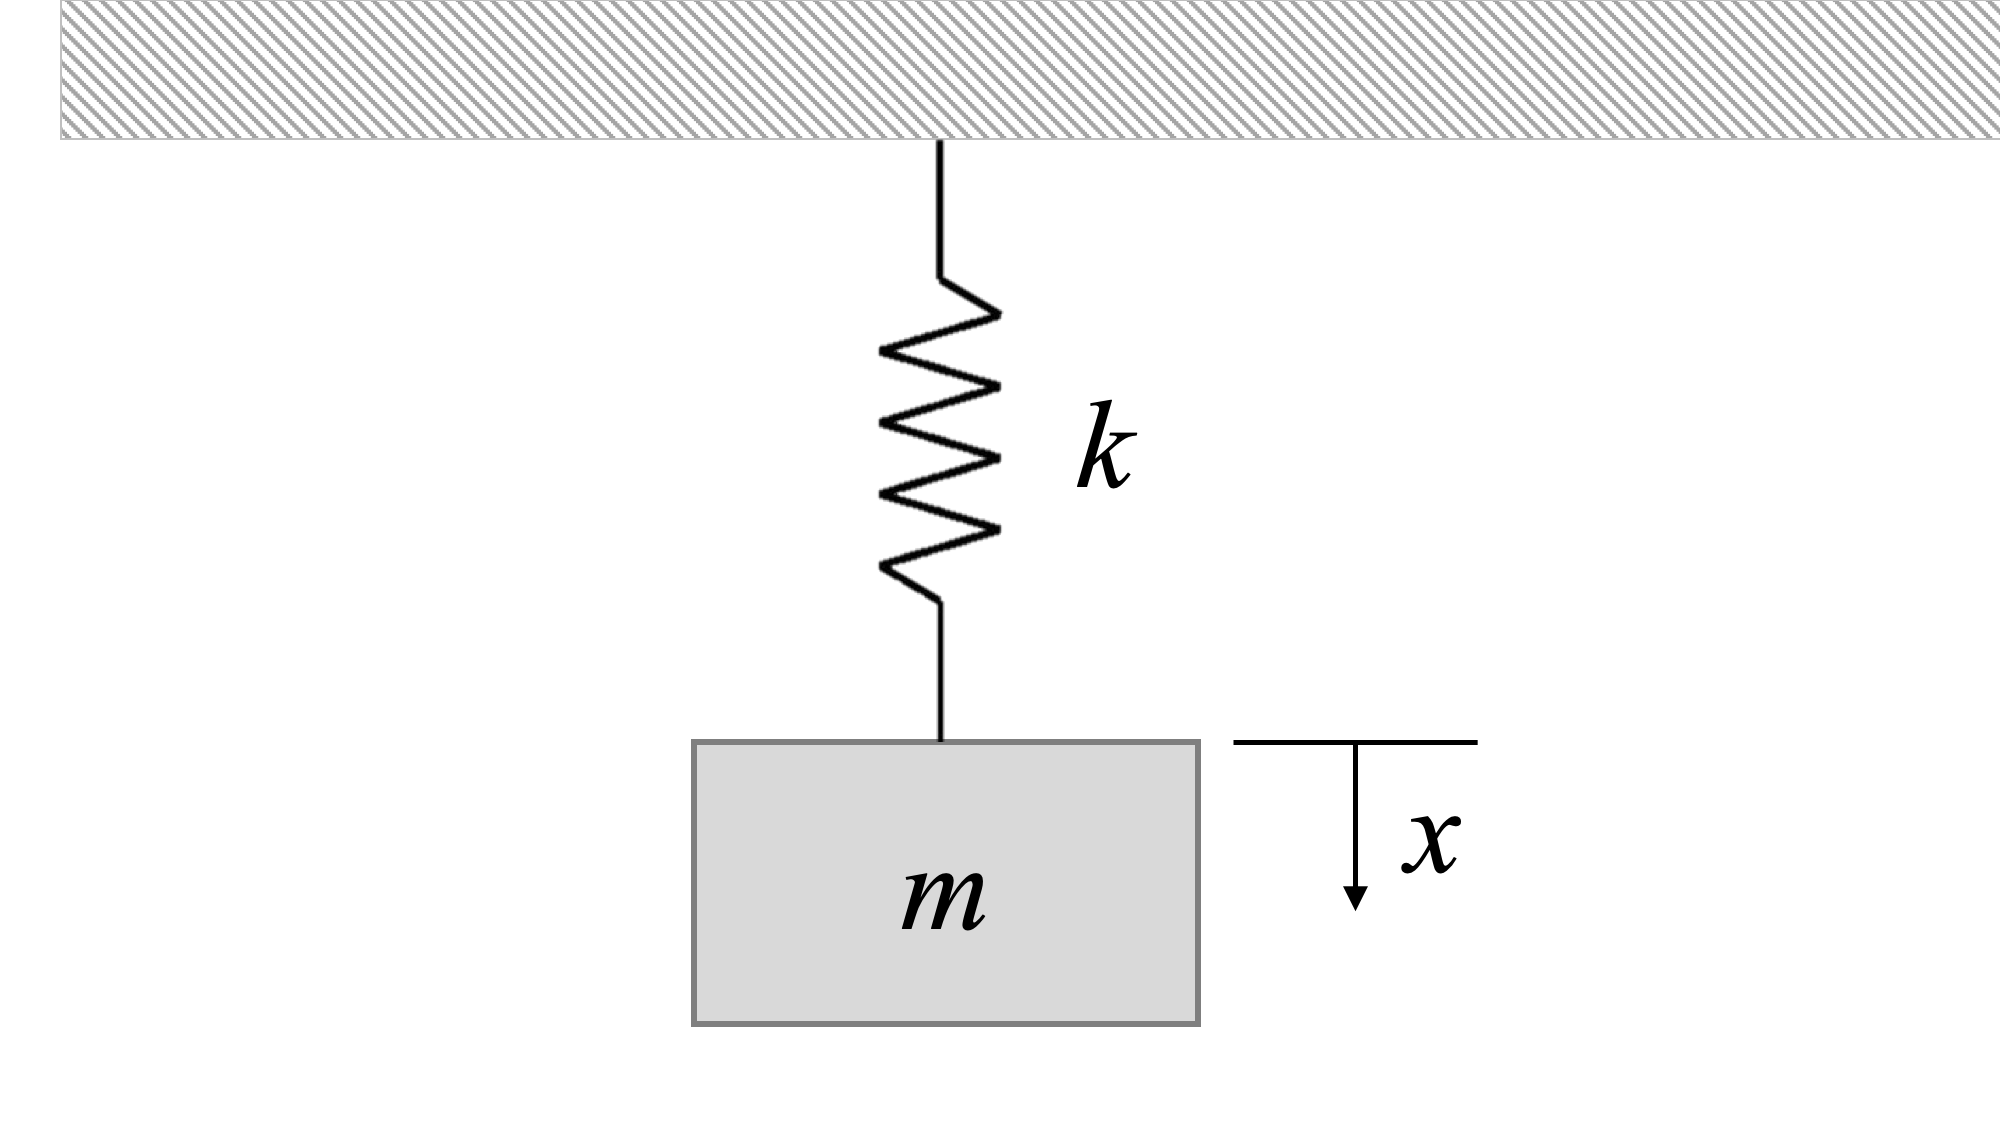 Un resorte vertical cuelga de un techo. Una masa m está unida al extremo libre del resorte, y el sistema está en reposo. La dirección x positiva apunta hacia la parte inferior de la página, siendo la posición actual de la masa x = 0.